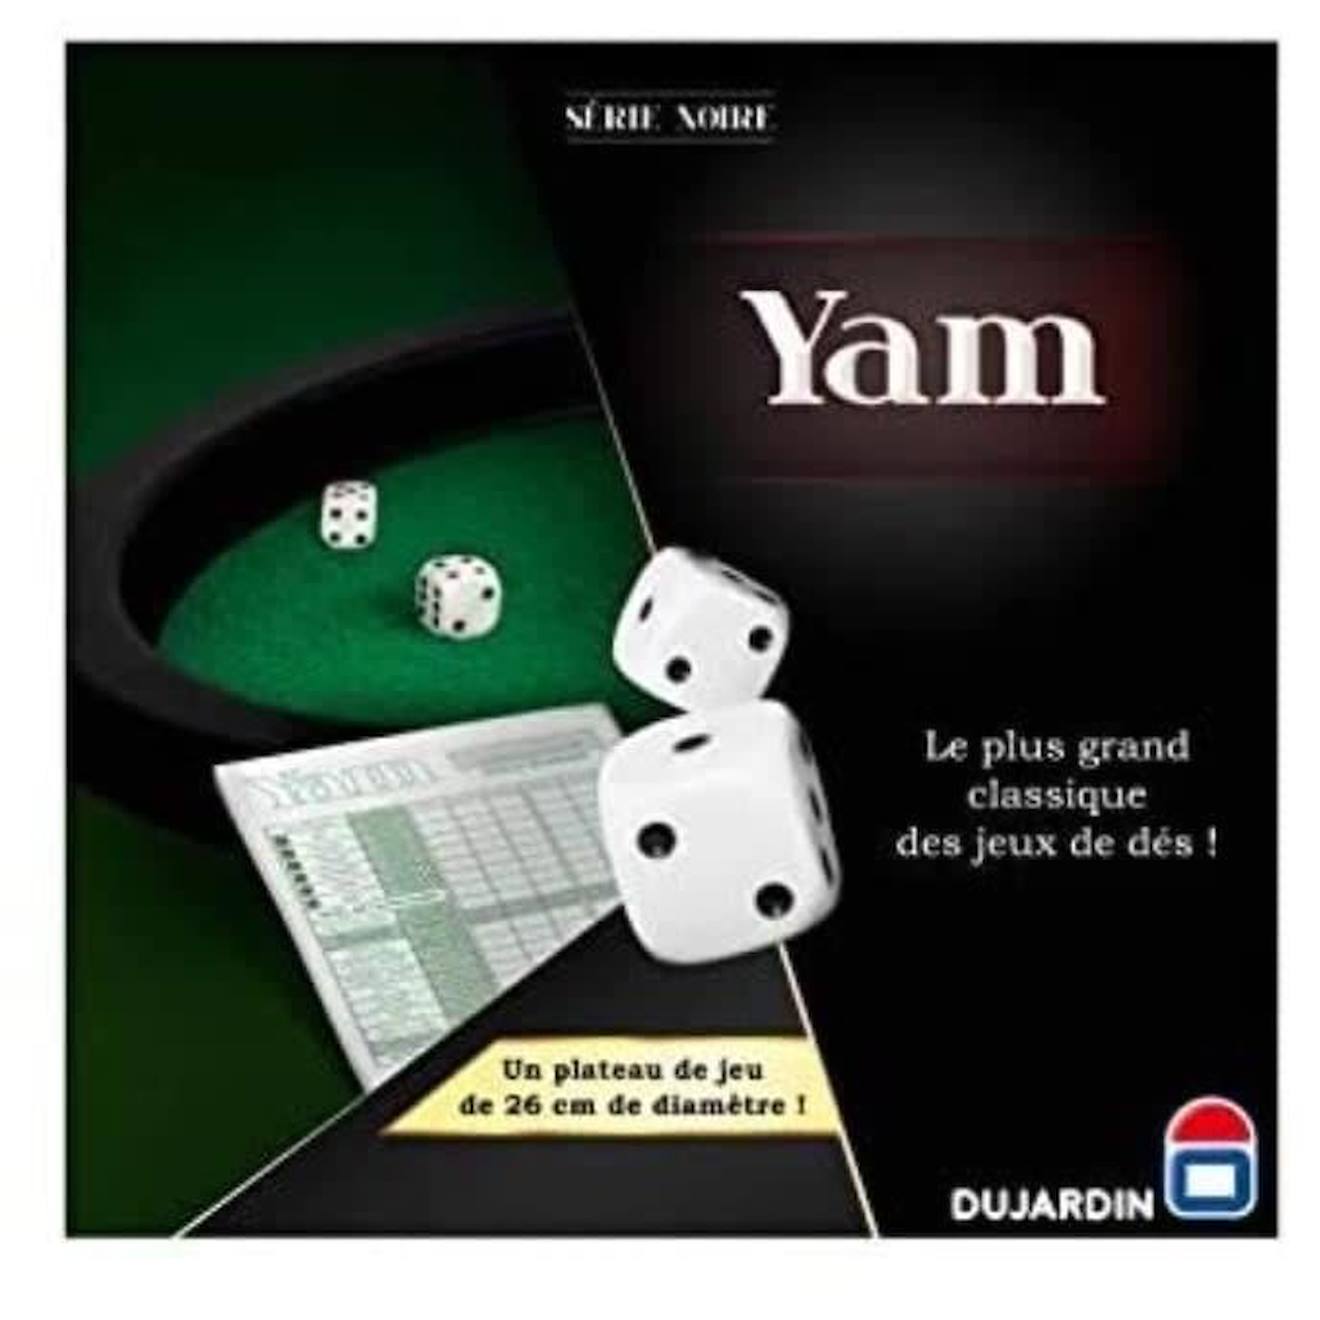 Serie Noire Yam 420 - Jeu De Dés - Dujardin - Lancez Les Dés Et Remplissez Votre Feuille De Marque D